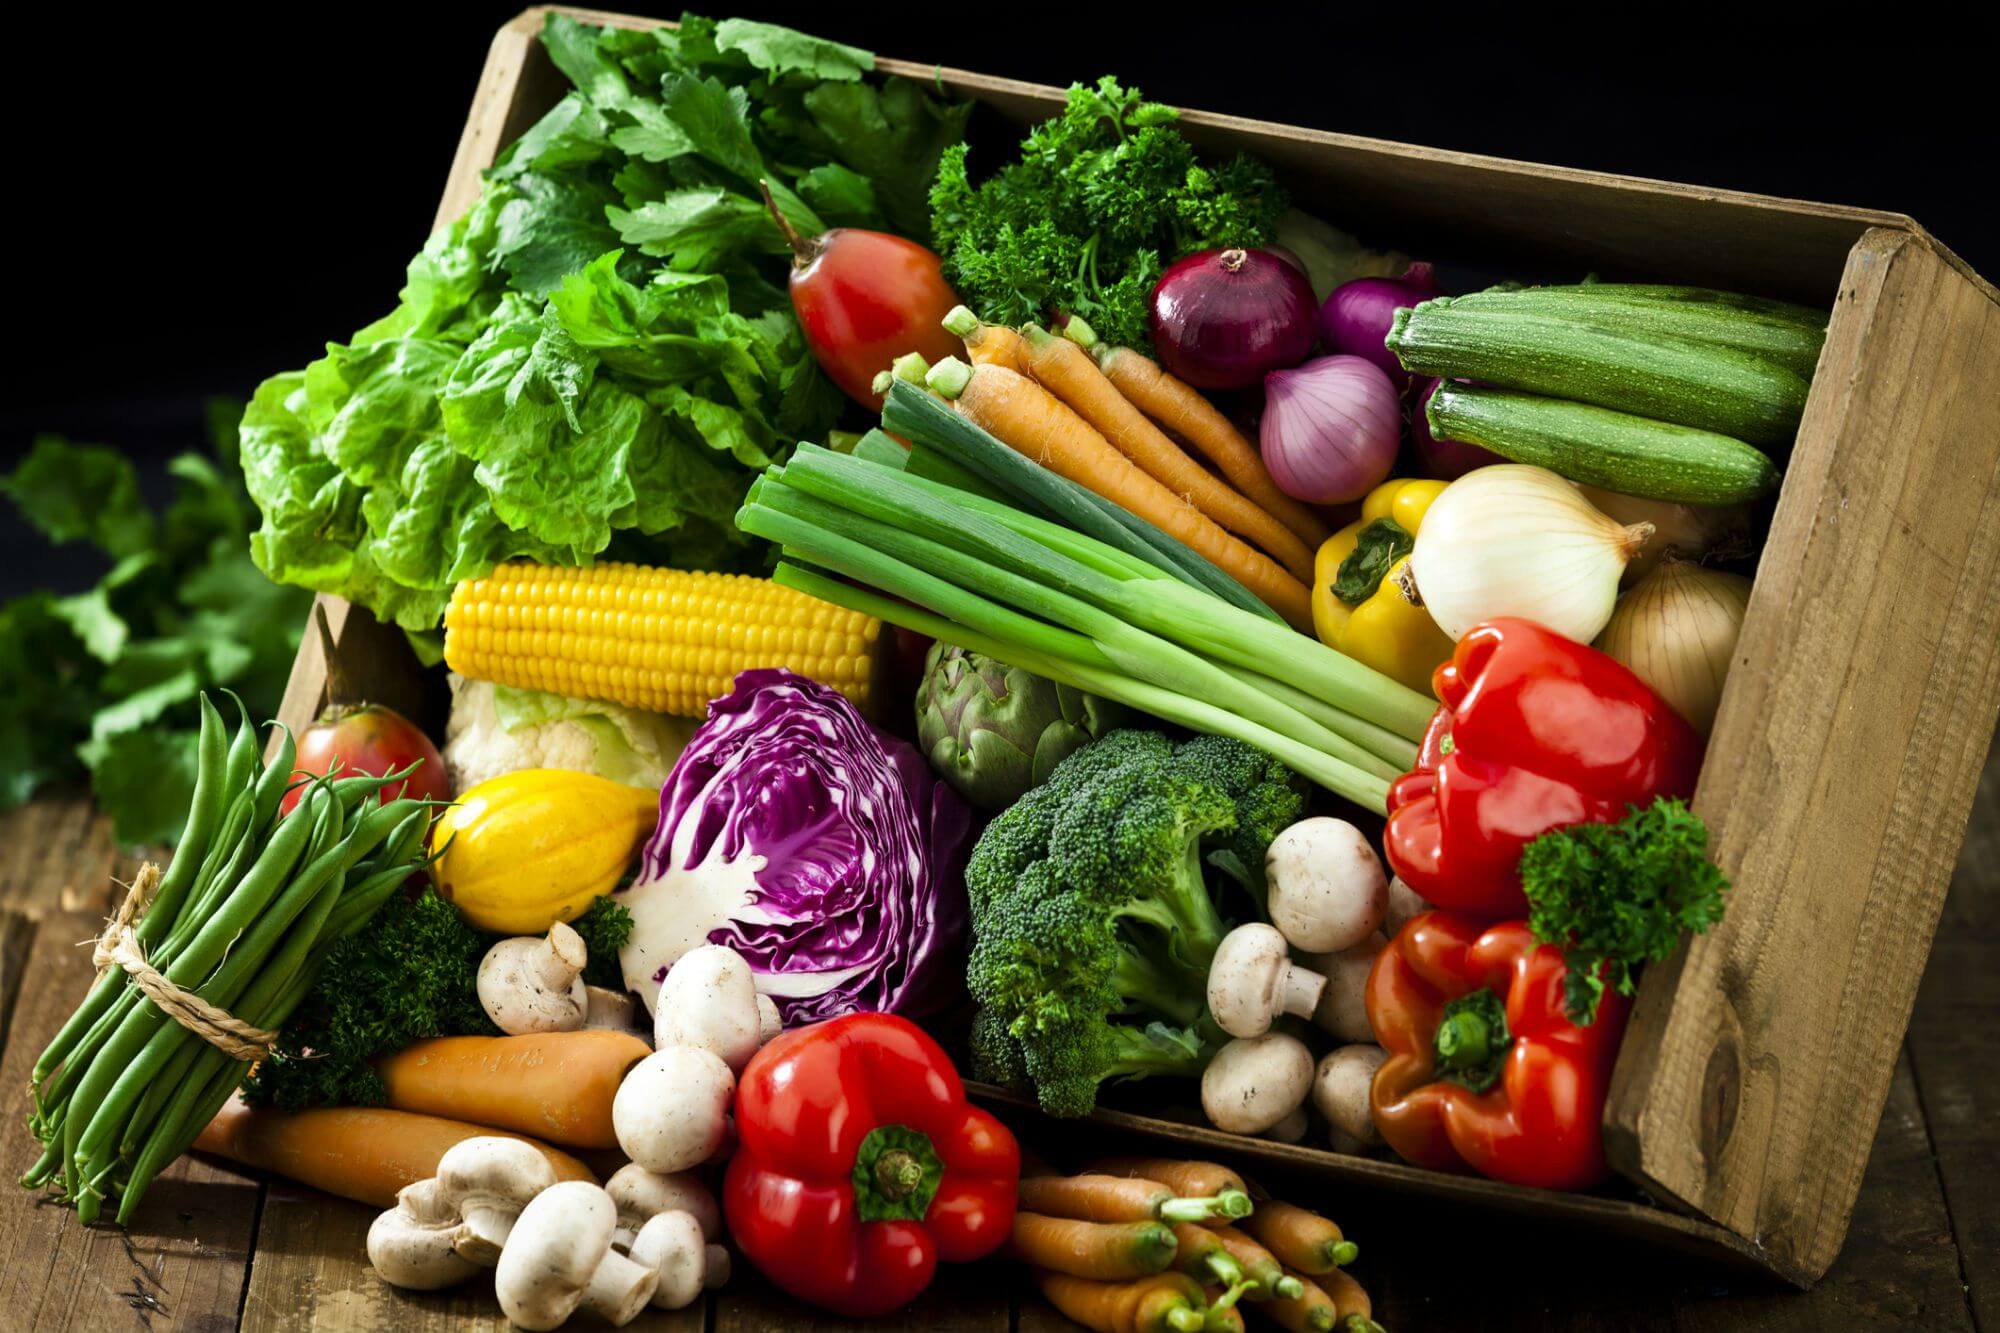 سبزیجات - vegetables